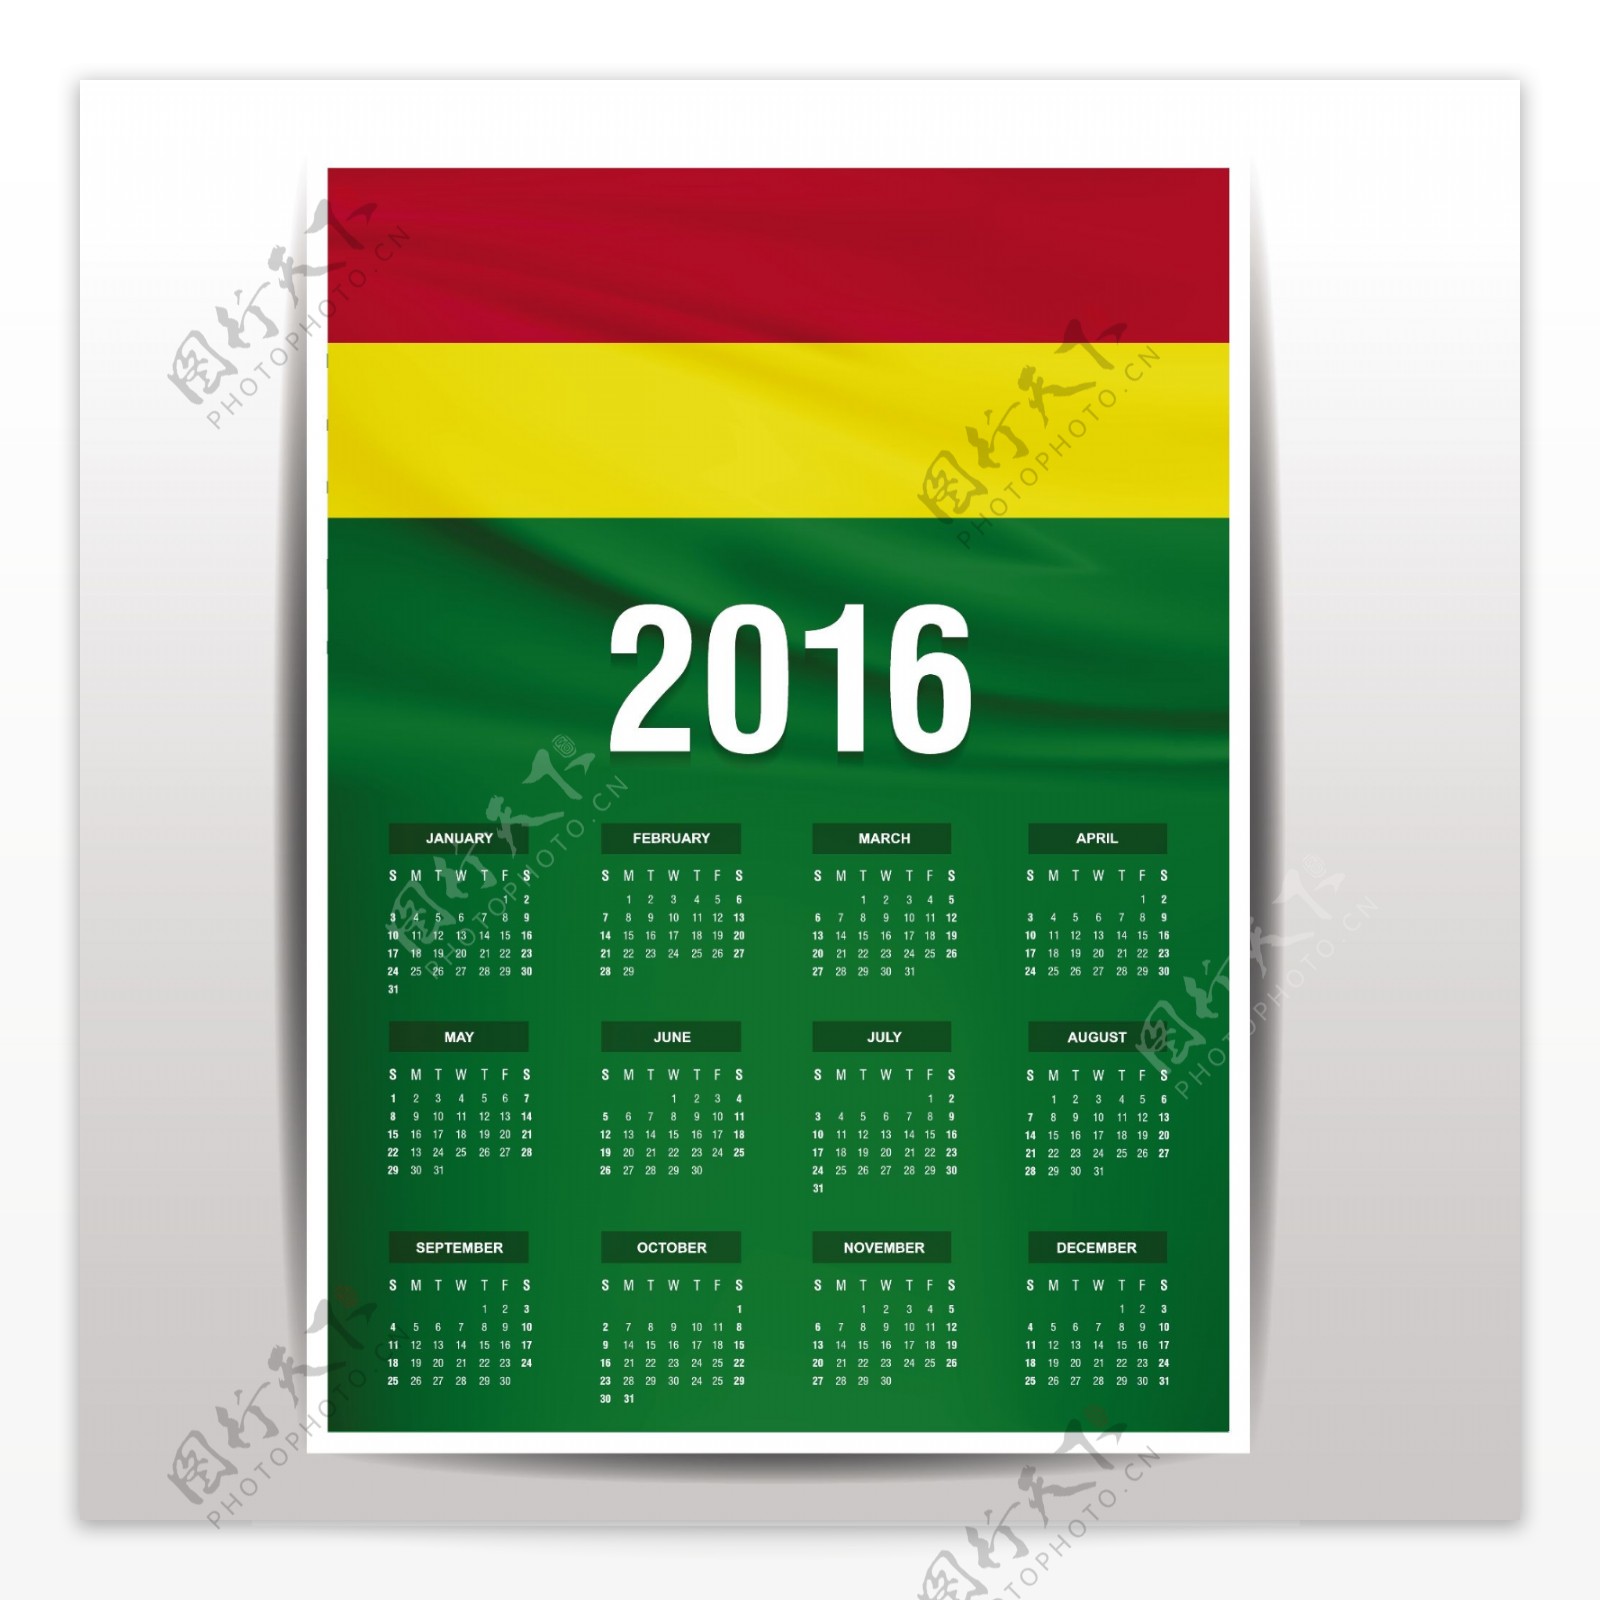 玻利维亚日历2016